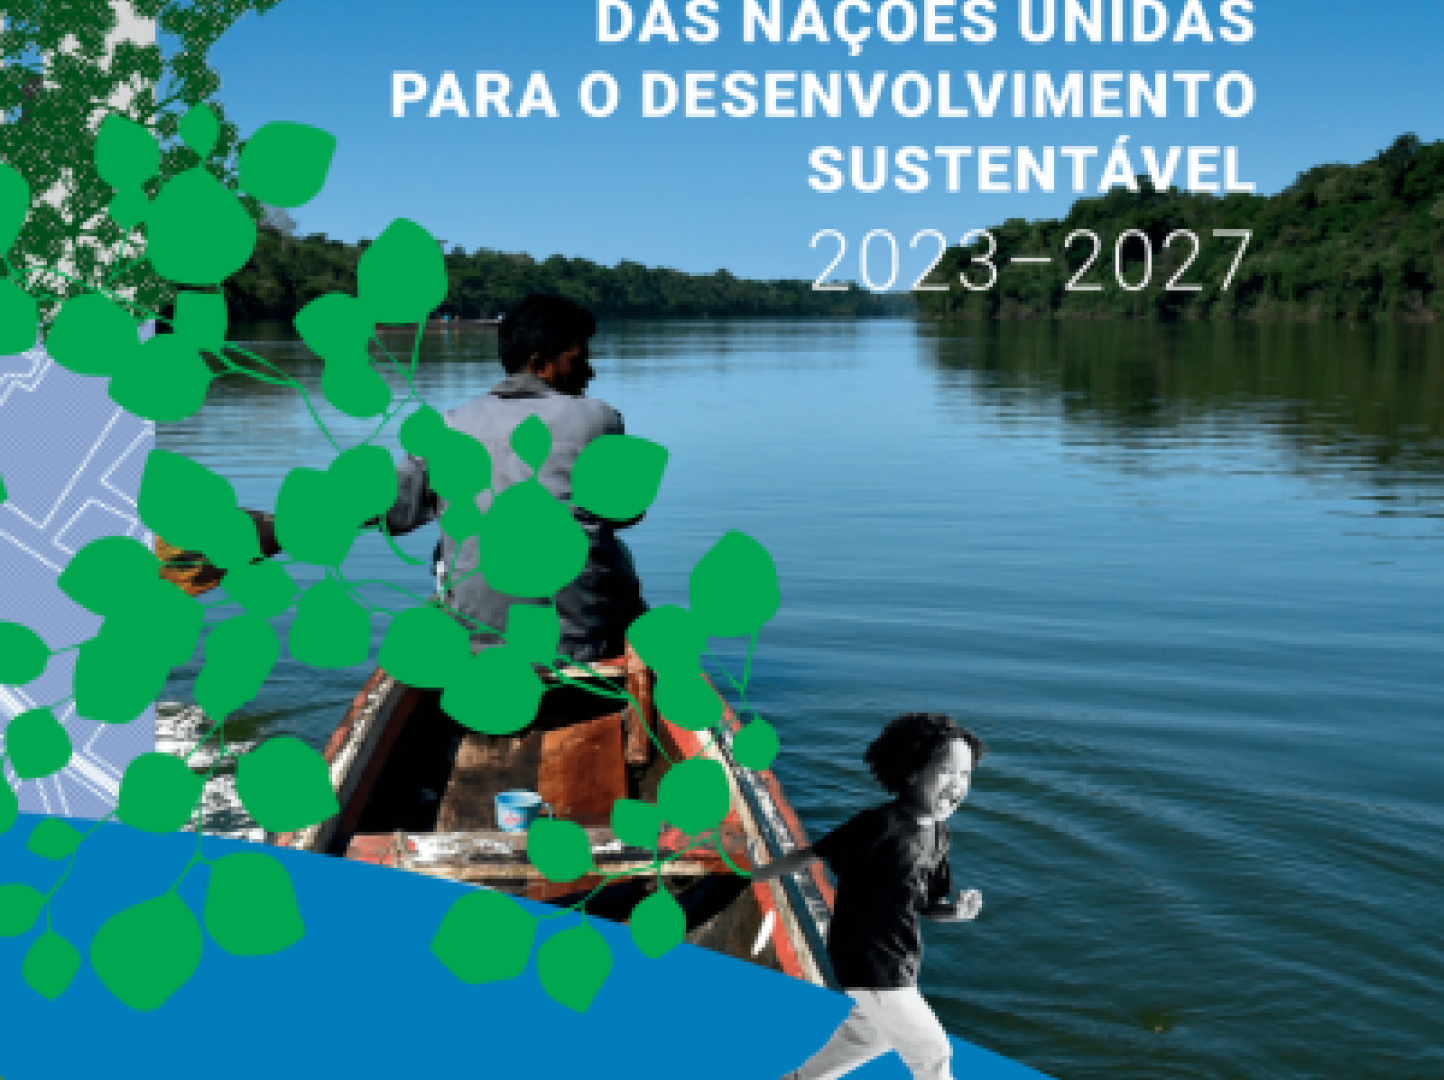 Marco de Cooperação das Nações Unidas para o Desenvolvimento Sustentável 2023-2027